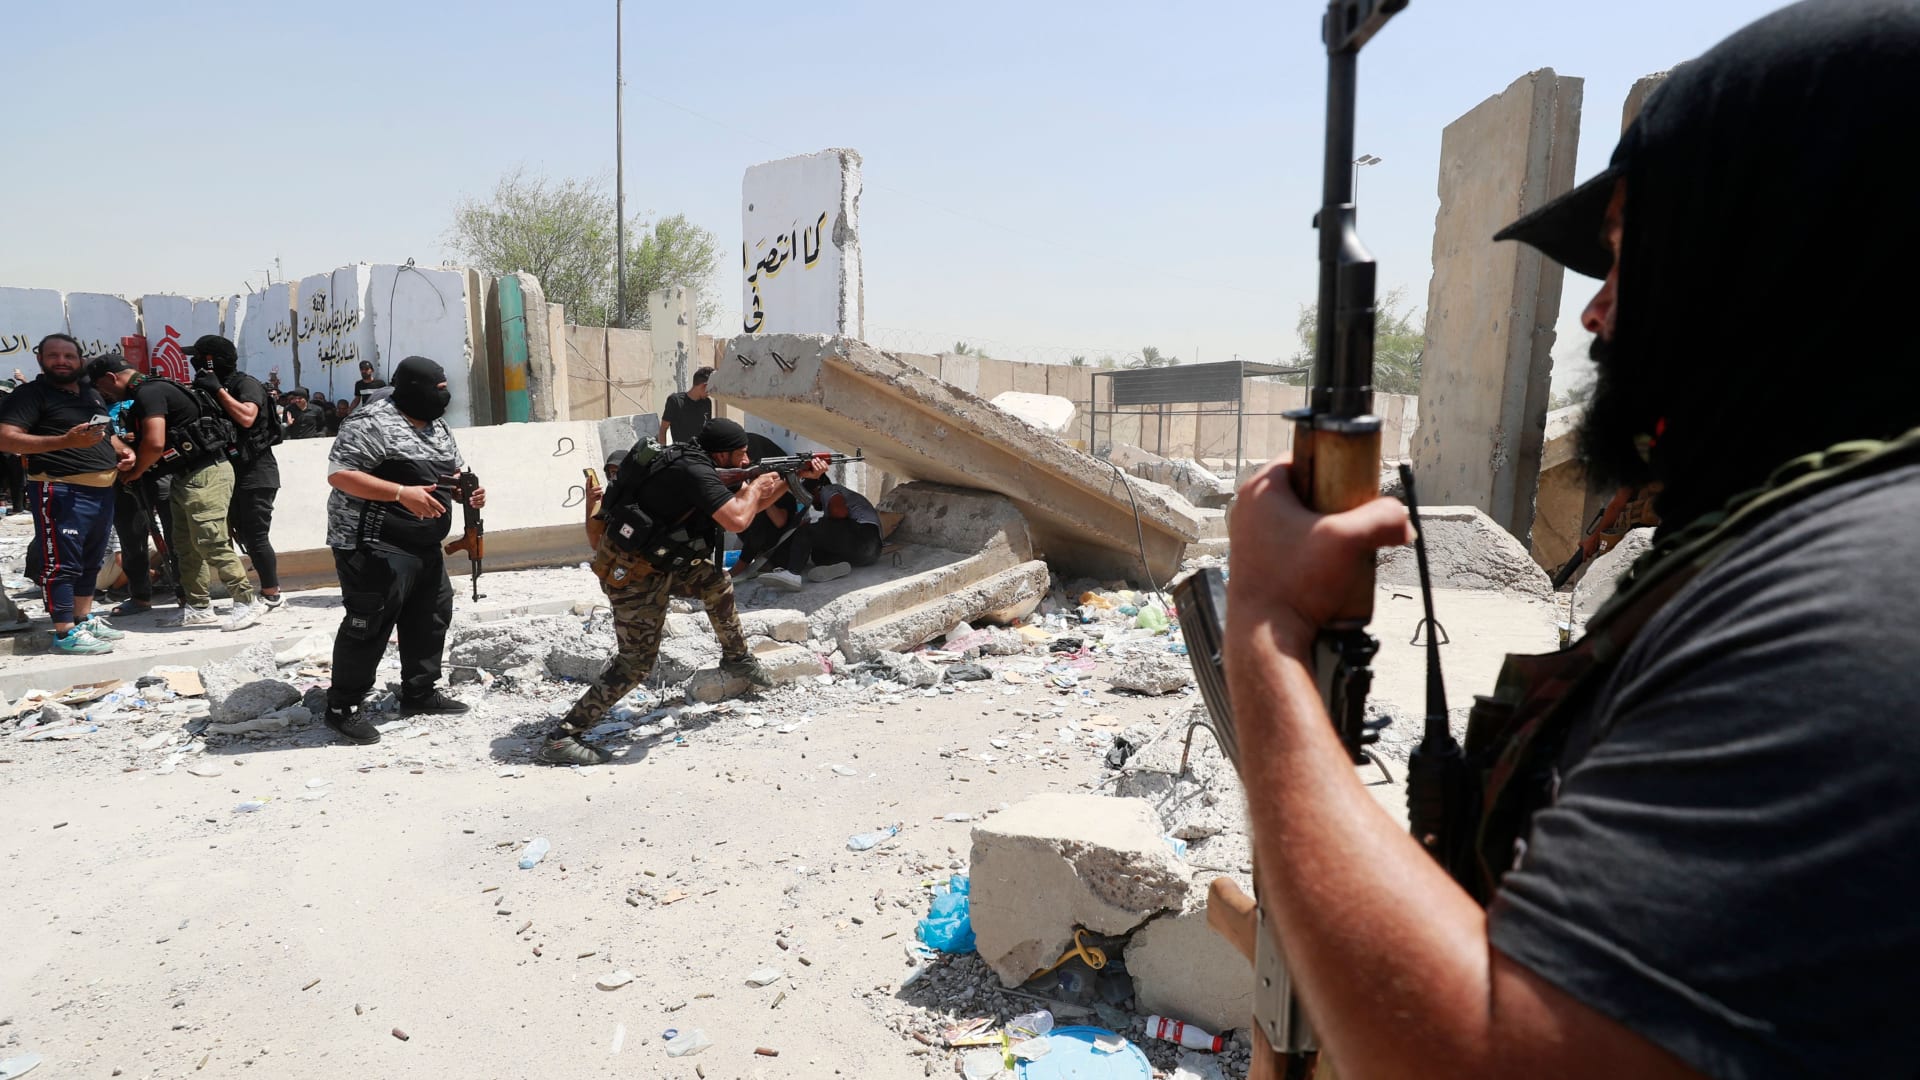 اشتباكات مسلحة عنيفة بين مؤيدي مقتدى الصدر ومسلحين من جهات أخرى في بغداد